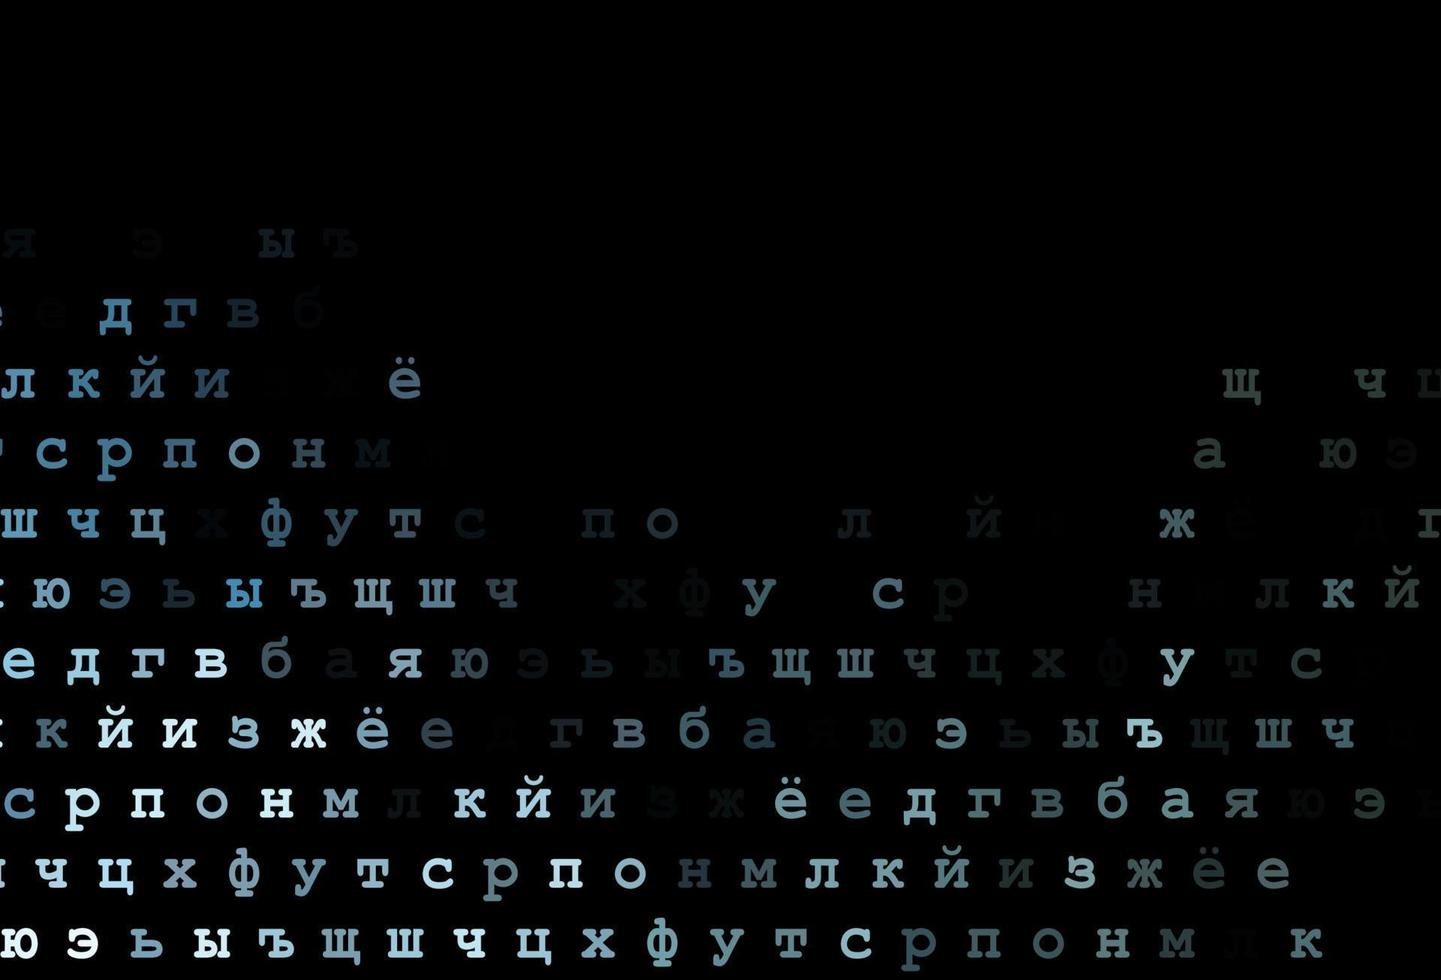 dunkelblaue, grüne Vektorvorlage mit isolierten Buchstaben. vektor